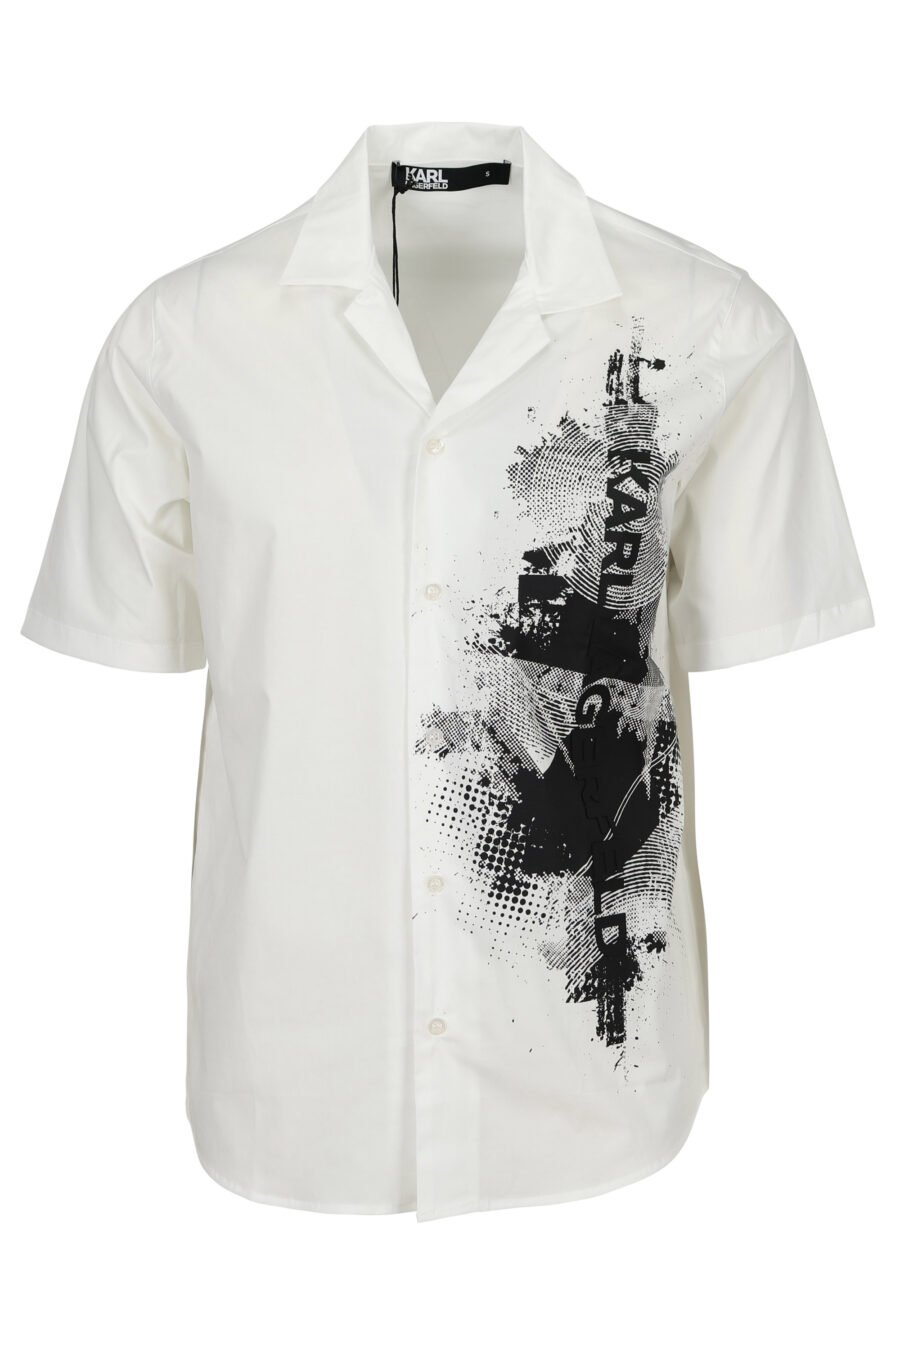 Camiseta blanca con maxilogo mancha vertical - 4062226917100